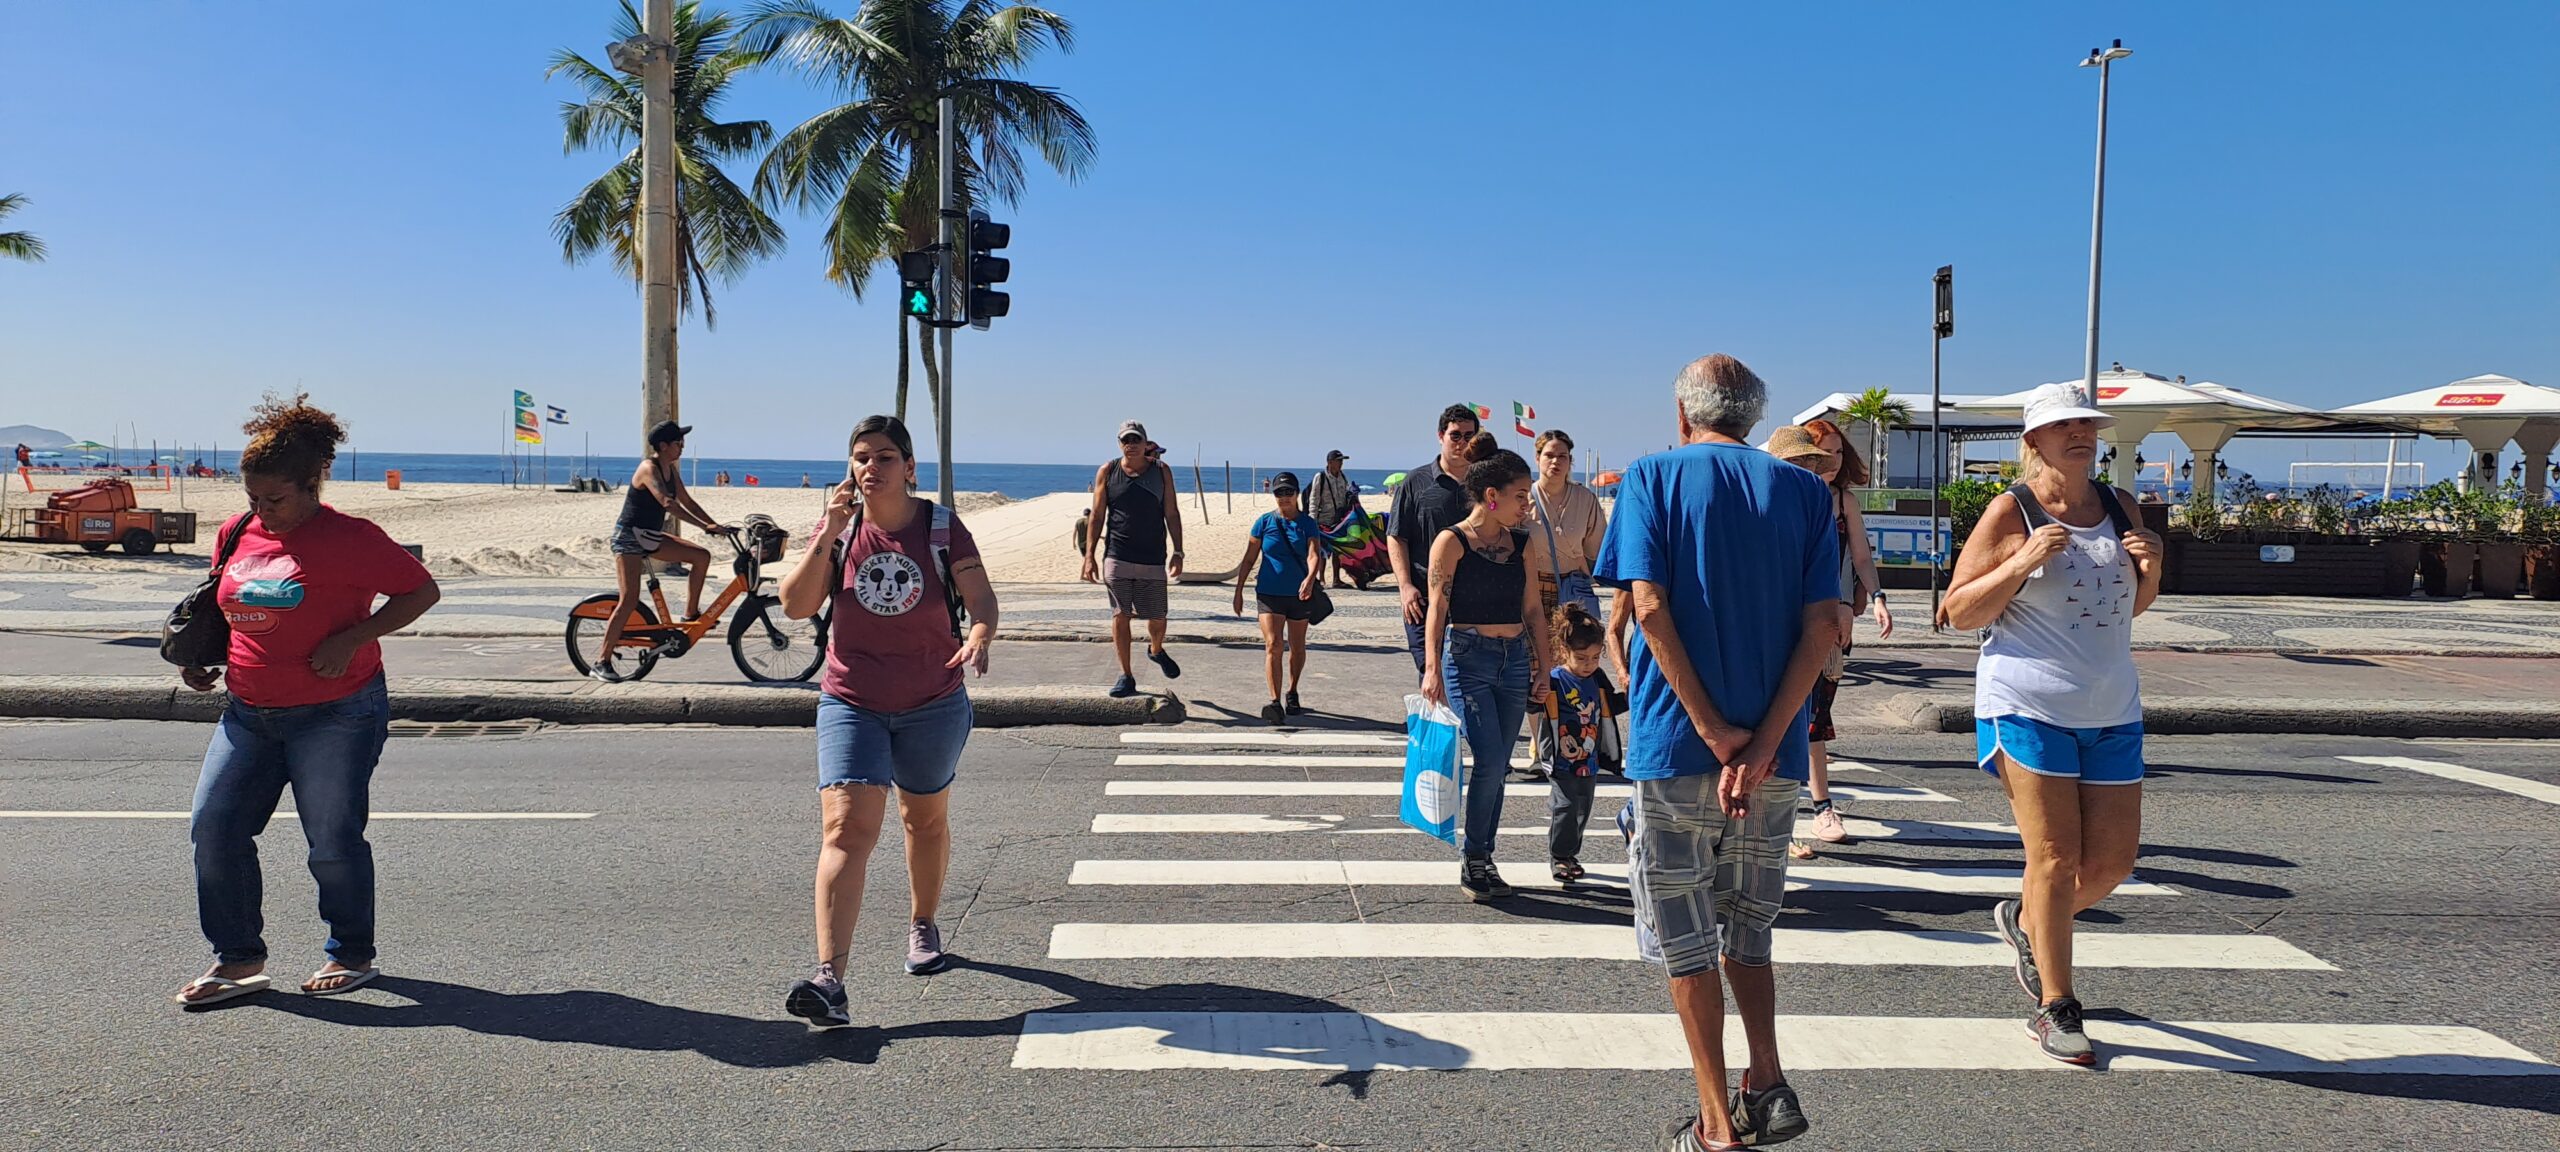 Entenda por que o Rio de Janeiro precisa de vias mais seguras